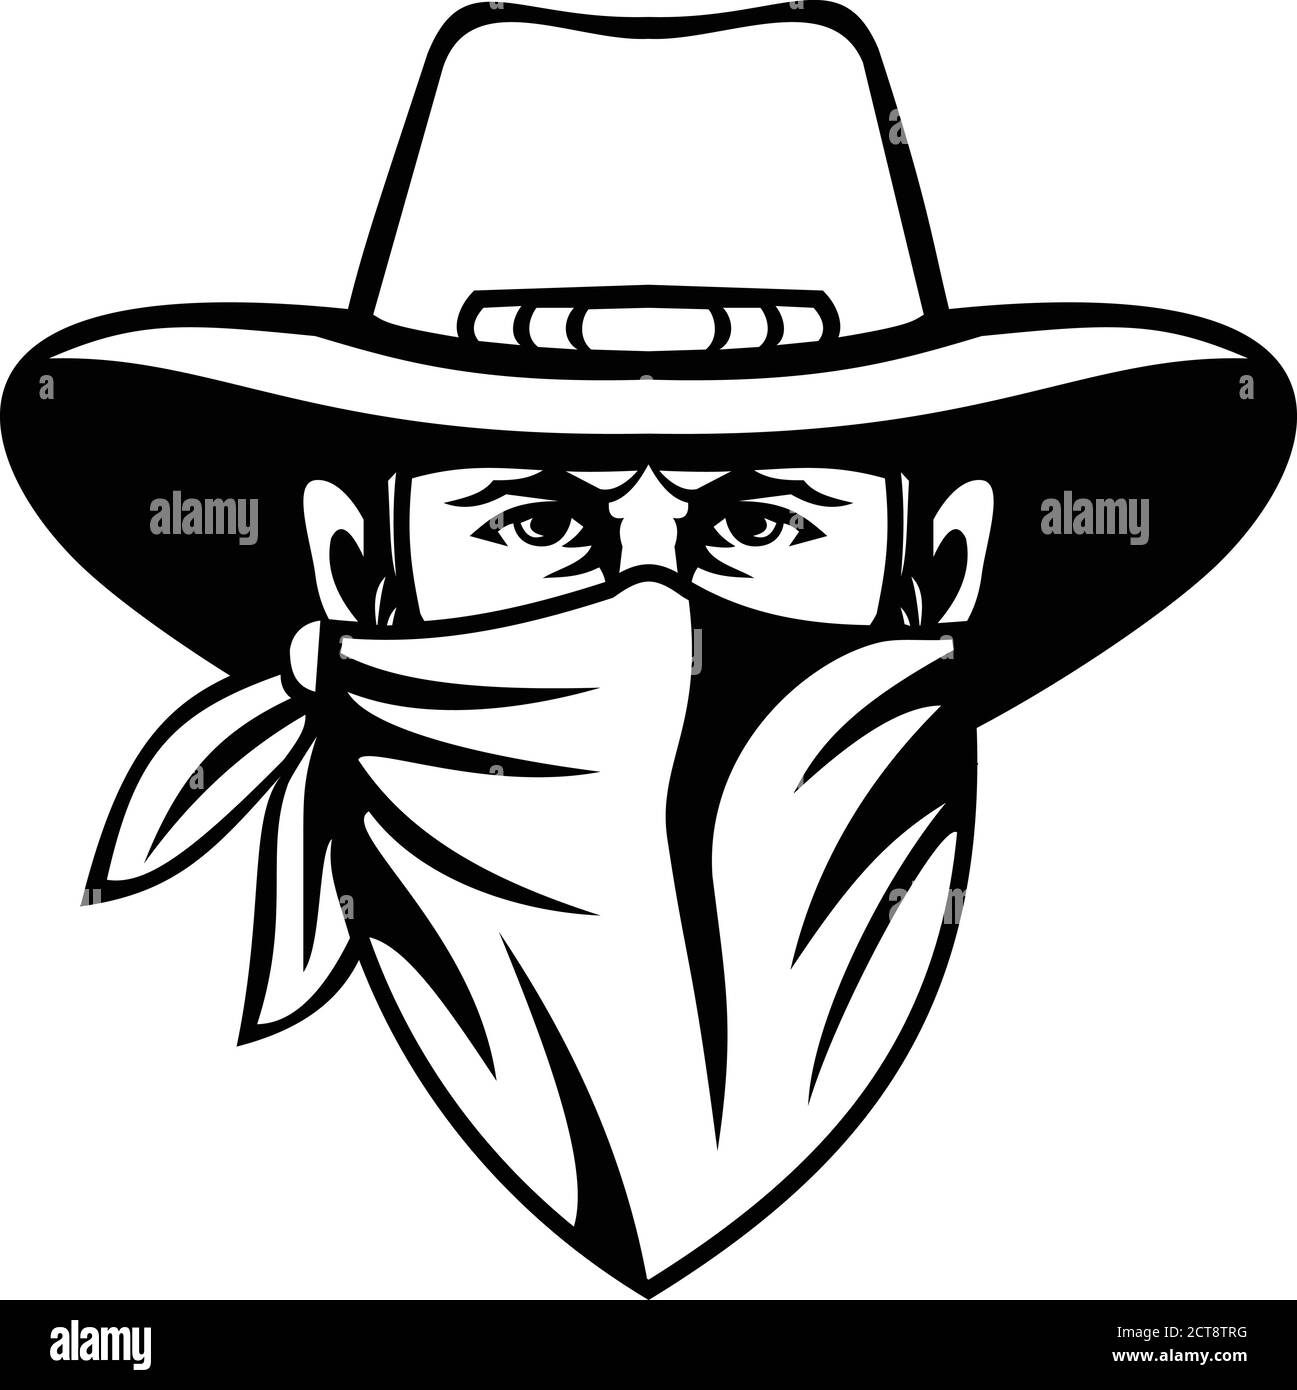 Mascot noir et blanc illustration de la tête d'un cowboy, bandit, hors-la-loi, maverick, highwayman ou voleur de banque portant masque ou bandana vu de Illustration de Vecteur